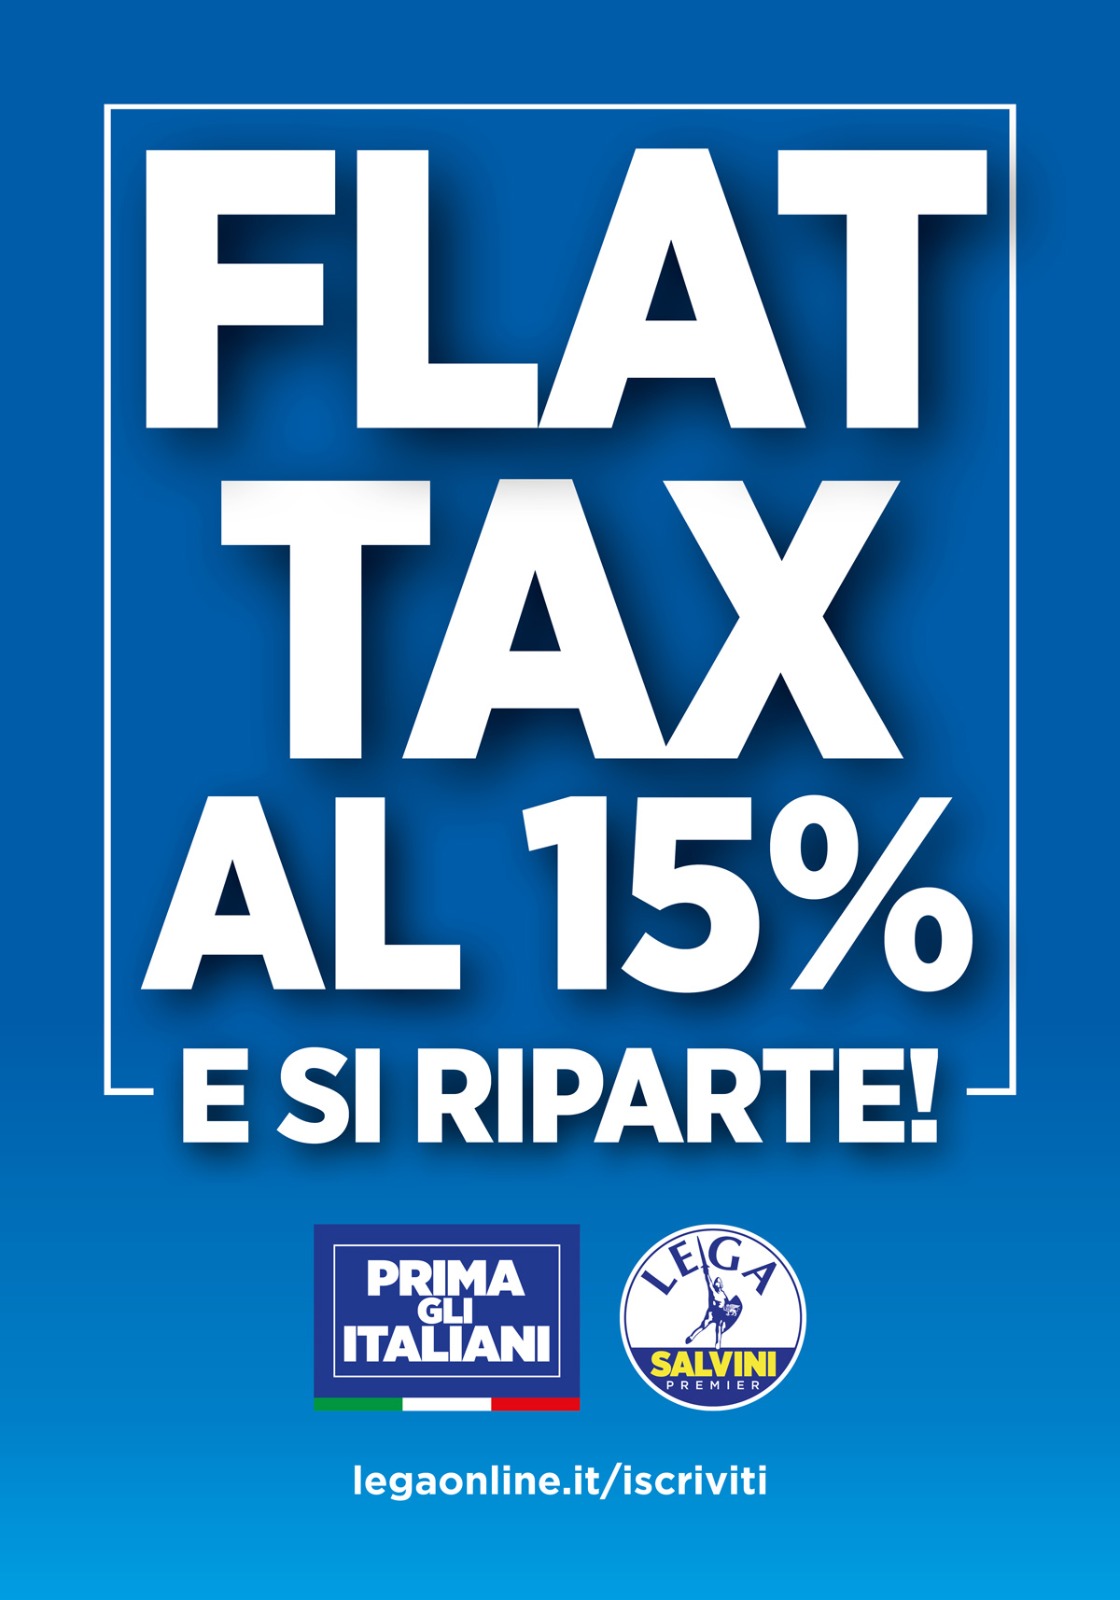 a flat tax